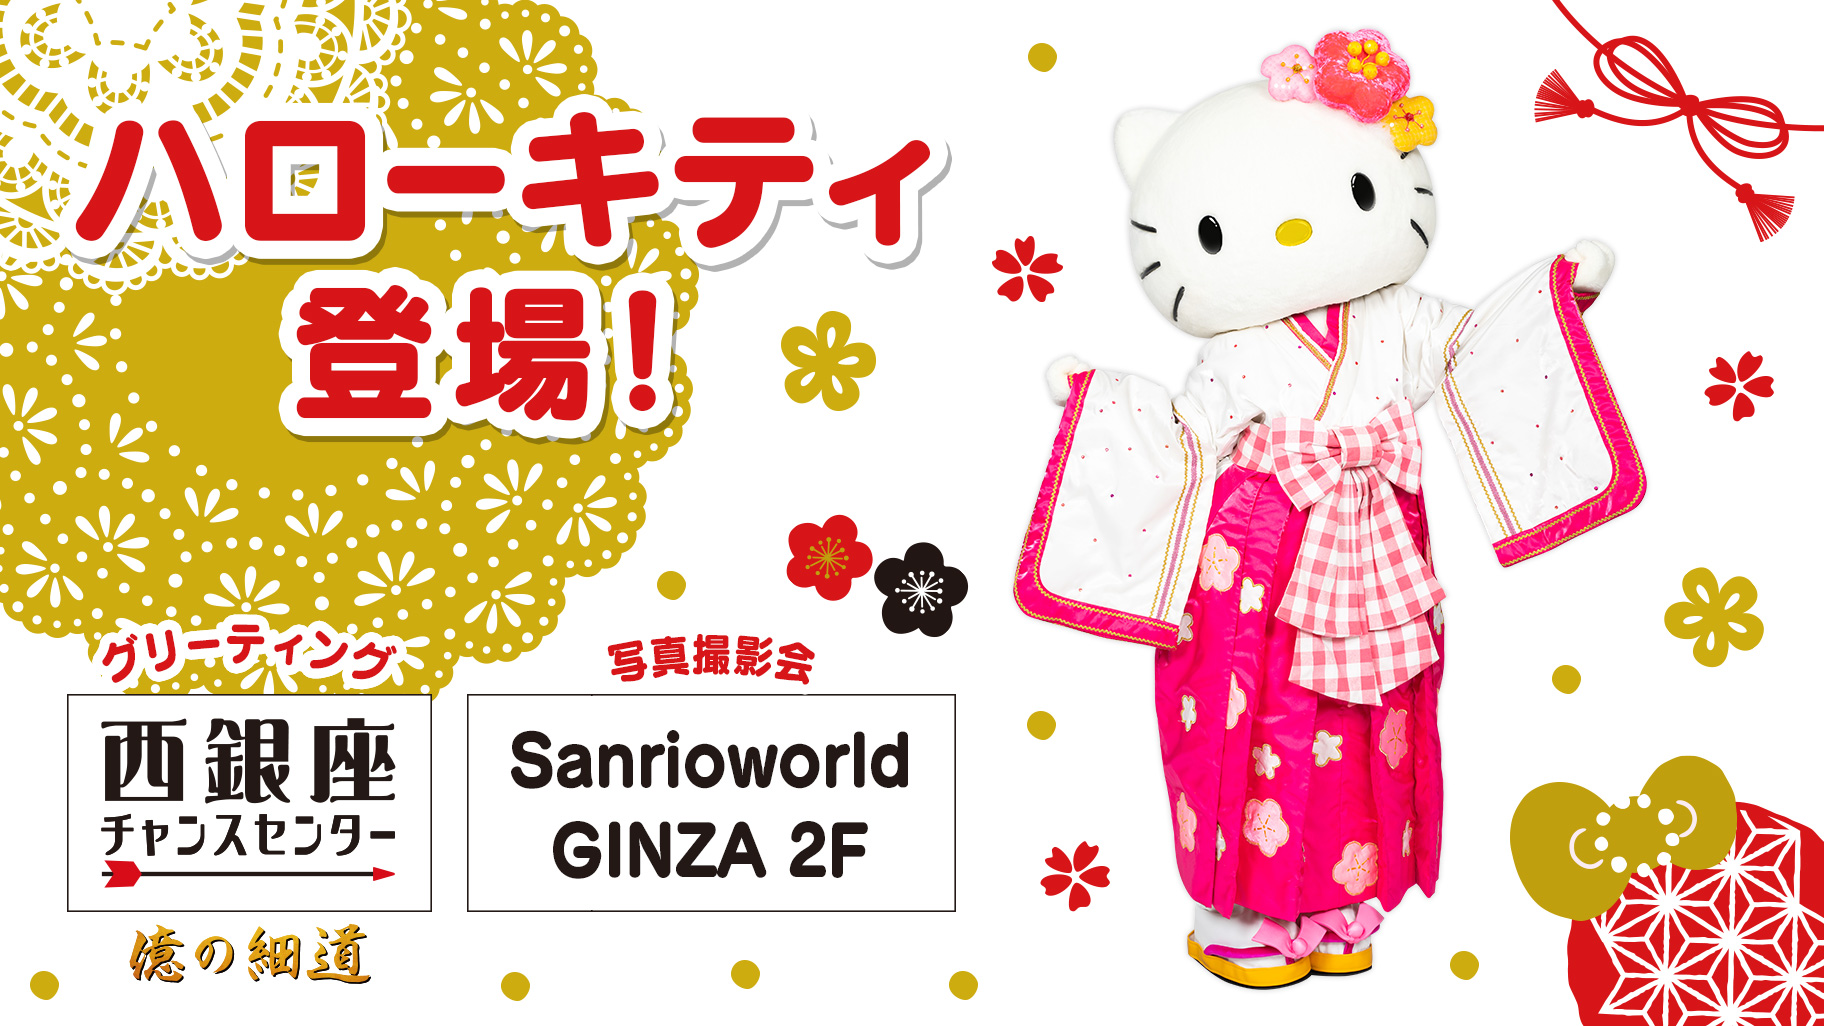 西銀座チャンスセンター前広場」と「Sanrioworld GINZA 2F」にハロー